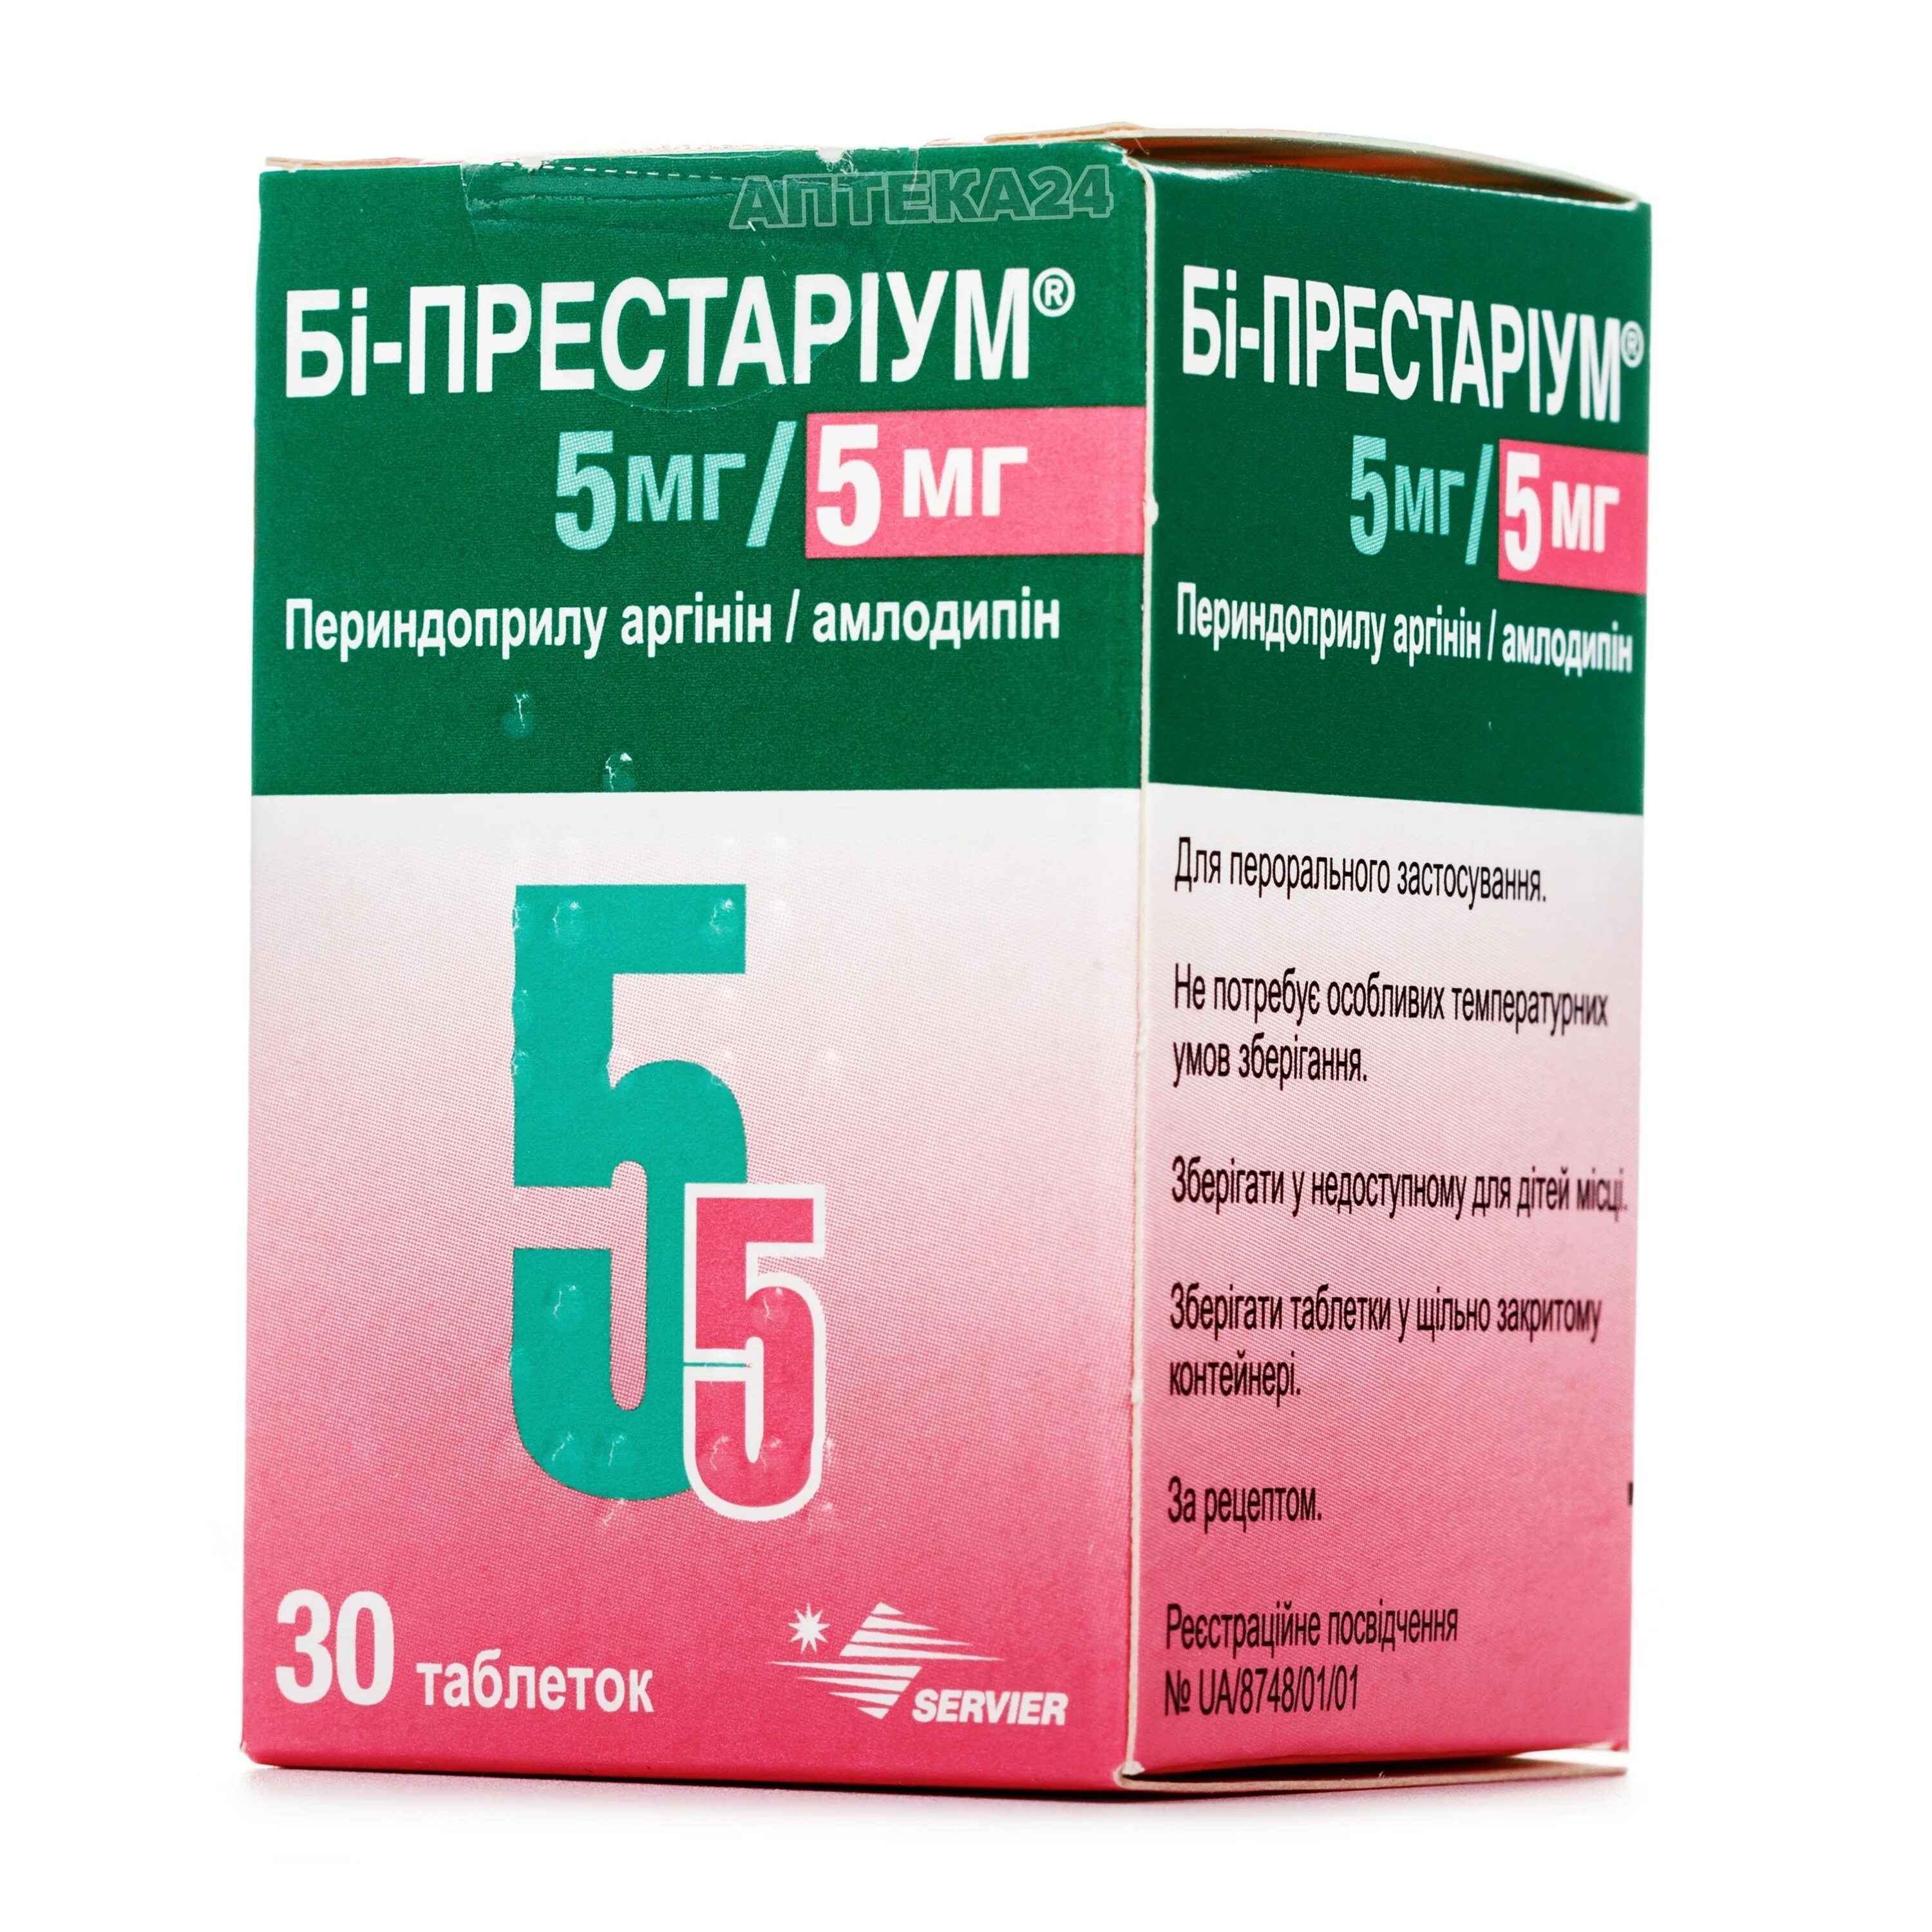 Аналог престариума 5 мг. Престариум 2 мг. Престариум 10 мг. Би-Престариум 5/5.